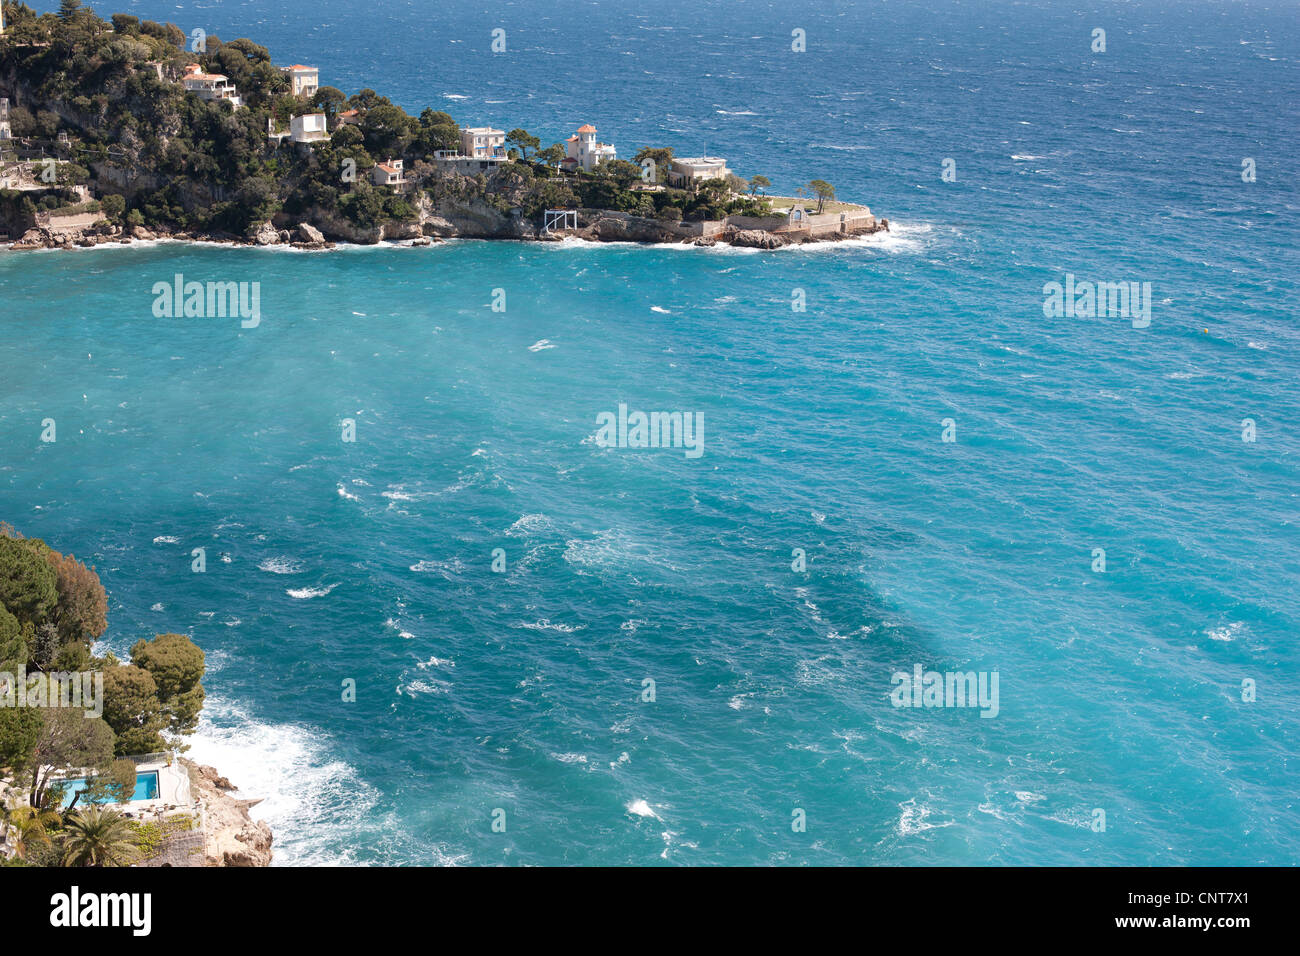 Felsenvorsprung mit luxuriösen Villen an der azurblauen mittelmeerküste. Cap Mala, Cap d'Ail, Französische Riviera, Frankreich. Stockfoto